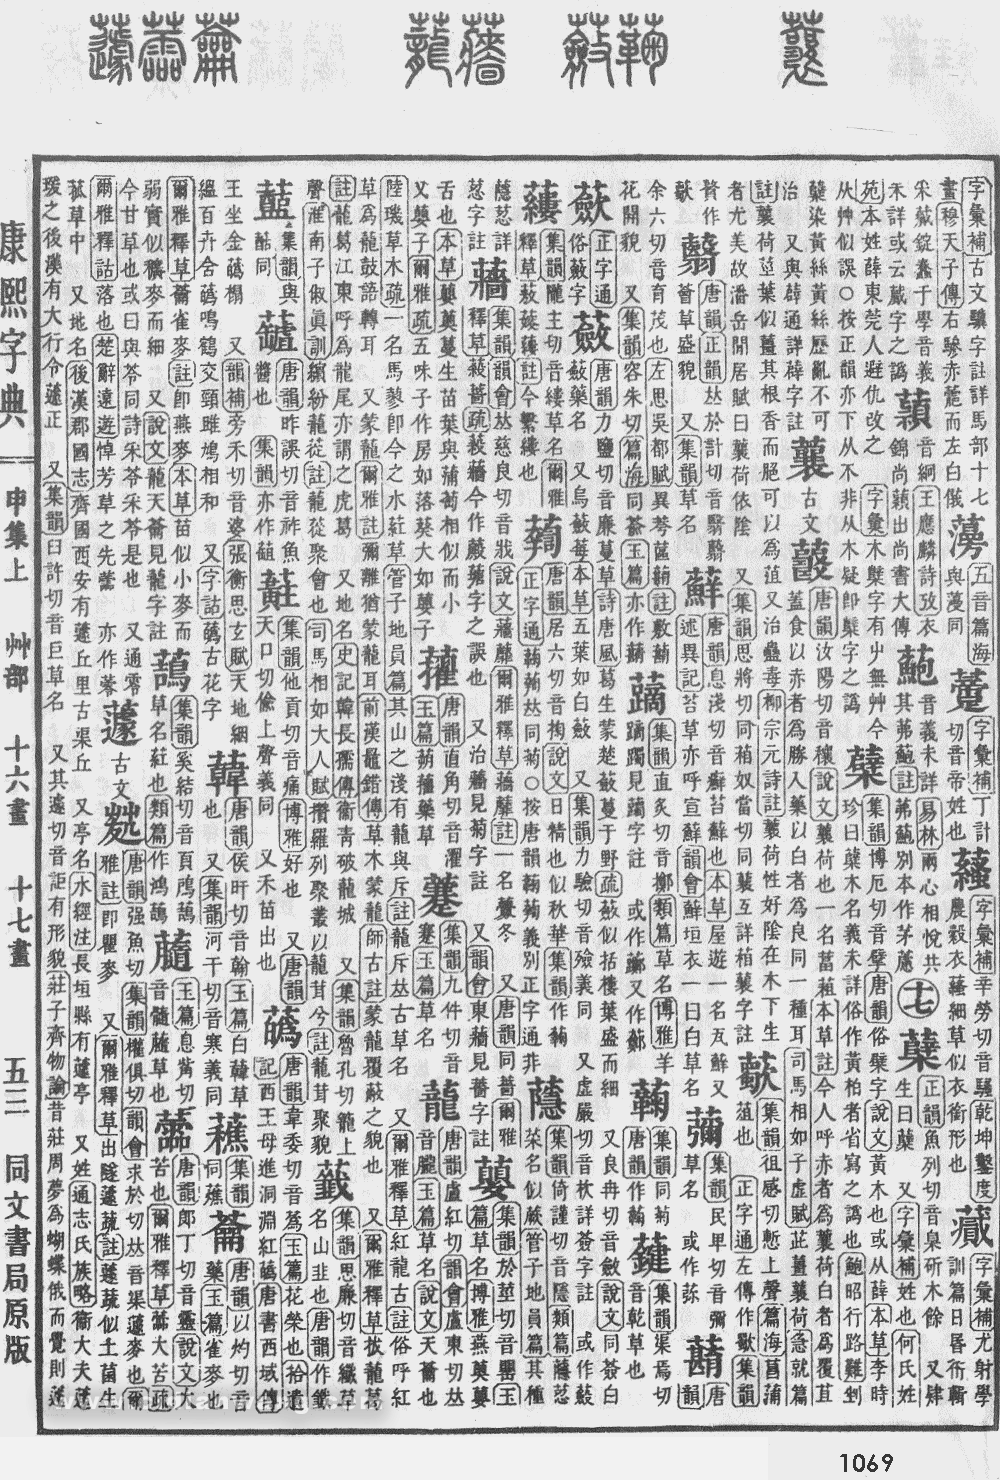 康熙字典掃描版第1069頁